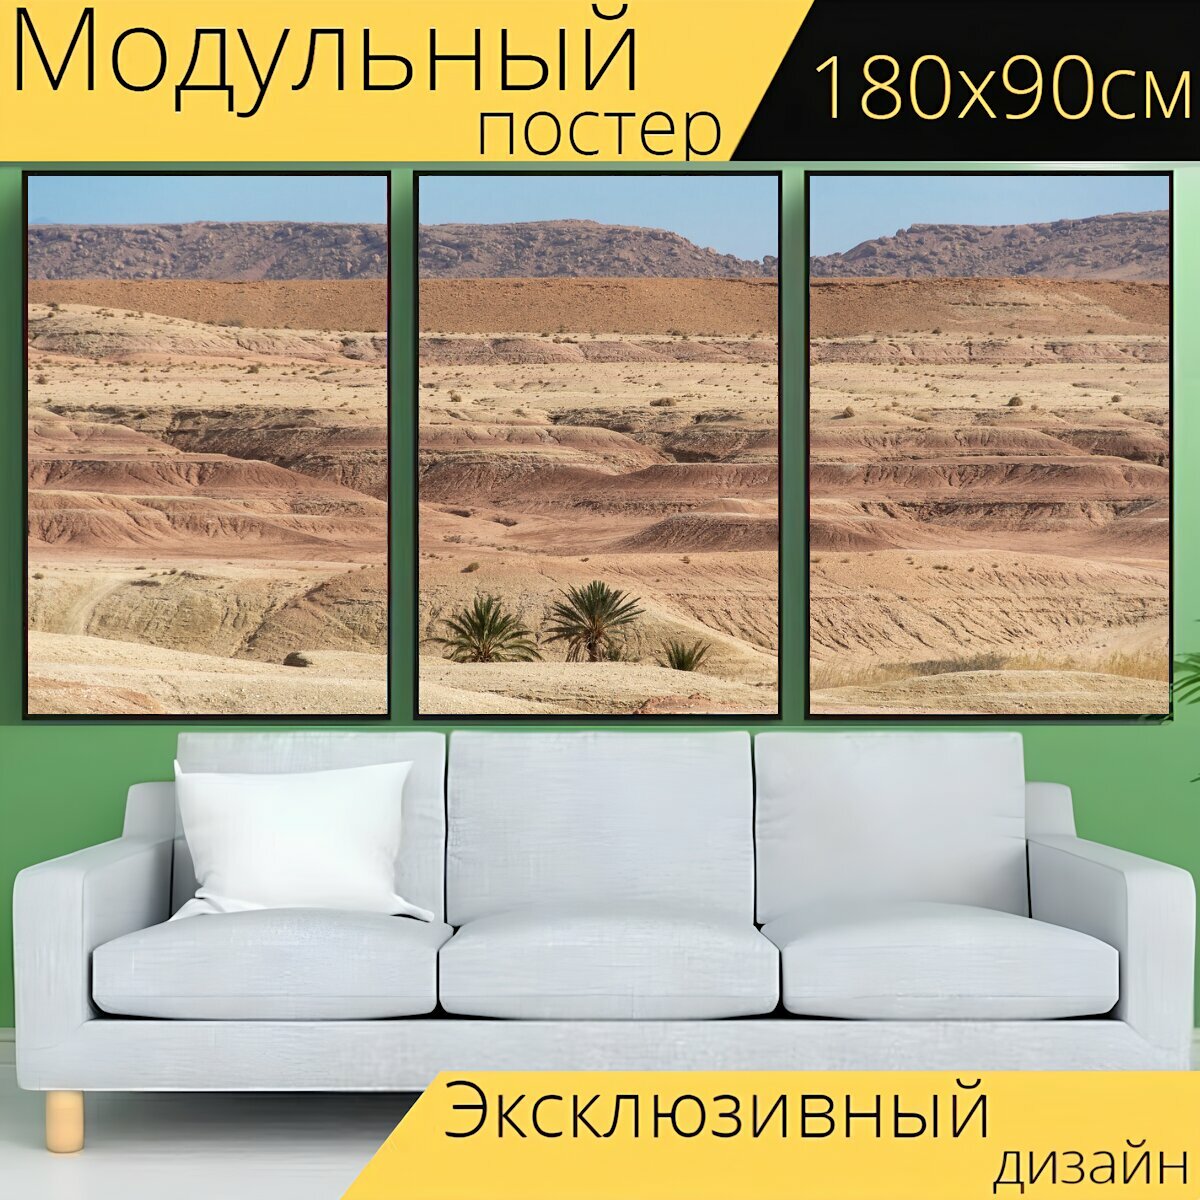 Модульный постер "Марокко, африке, северная" 180 x 90 см. для интерьера